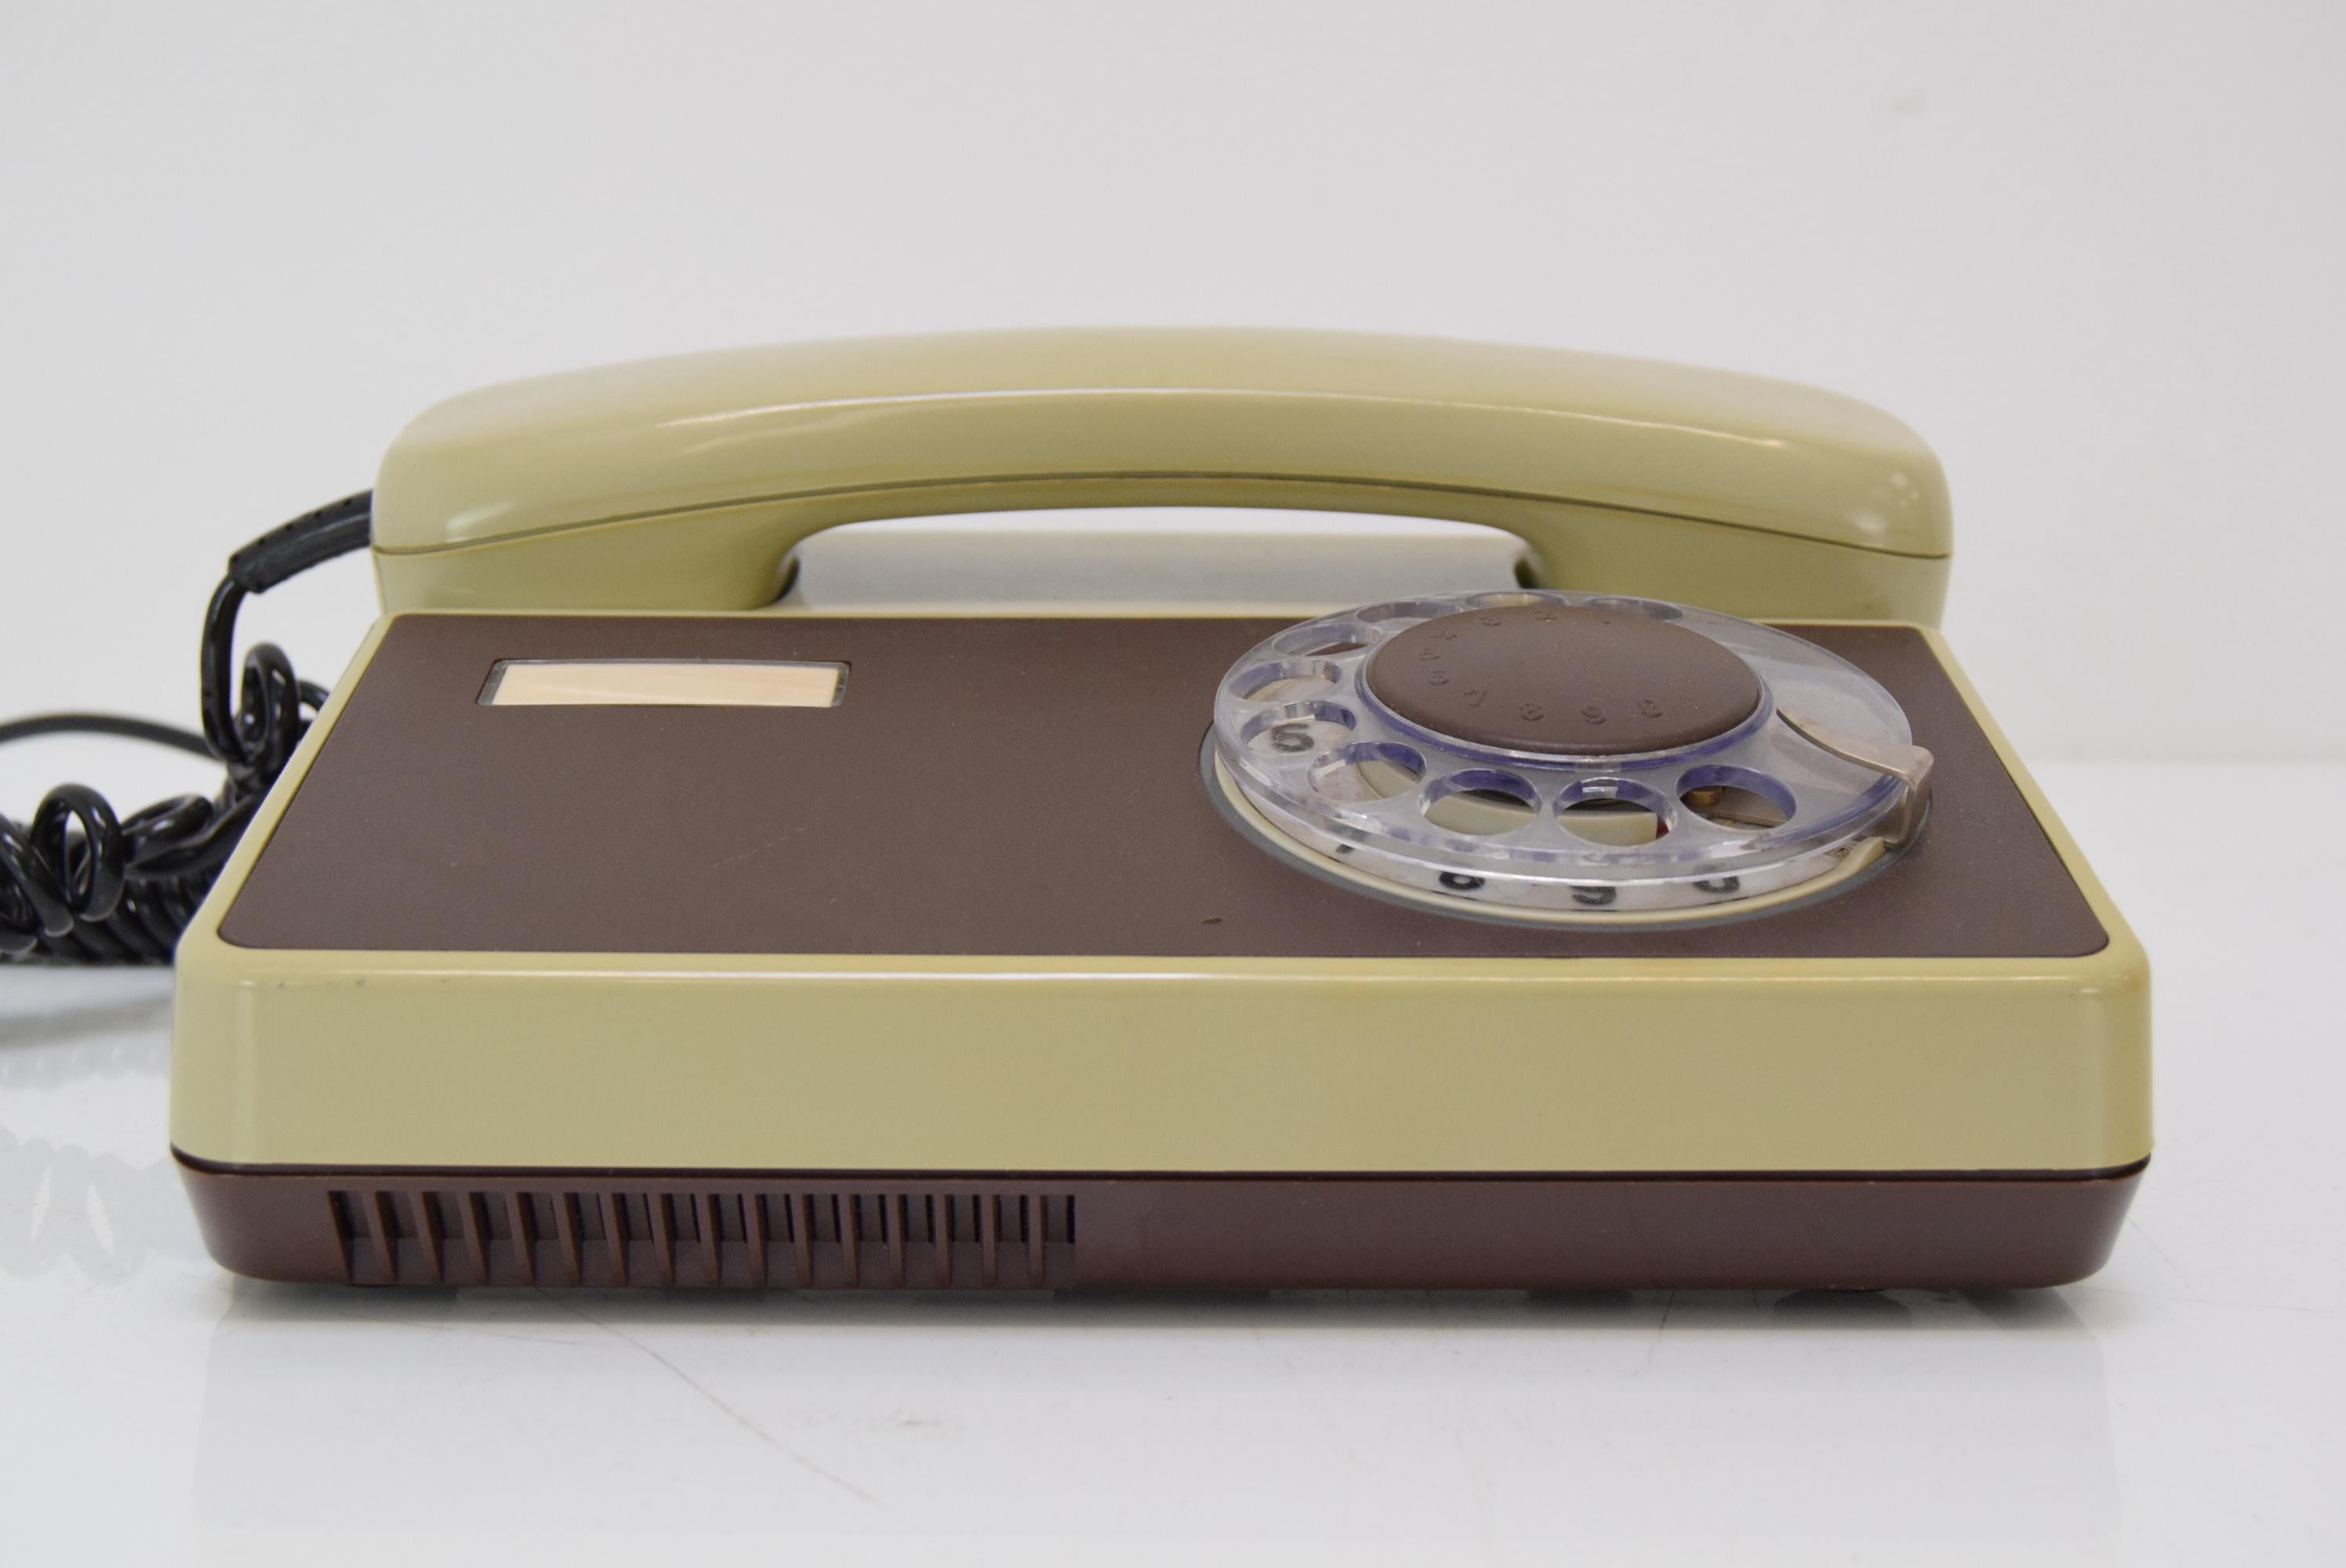 1980’s phone